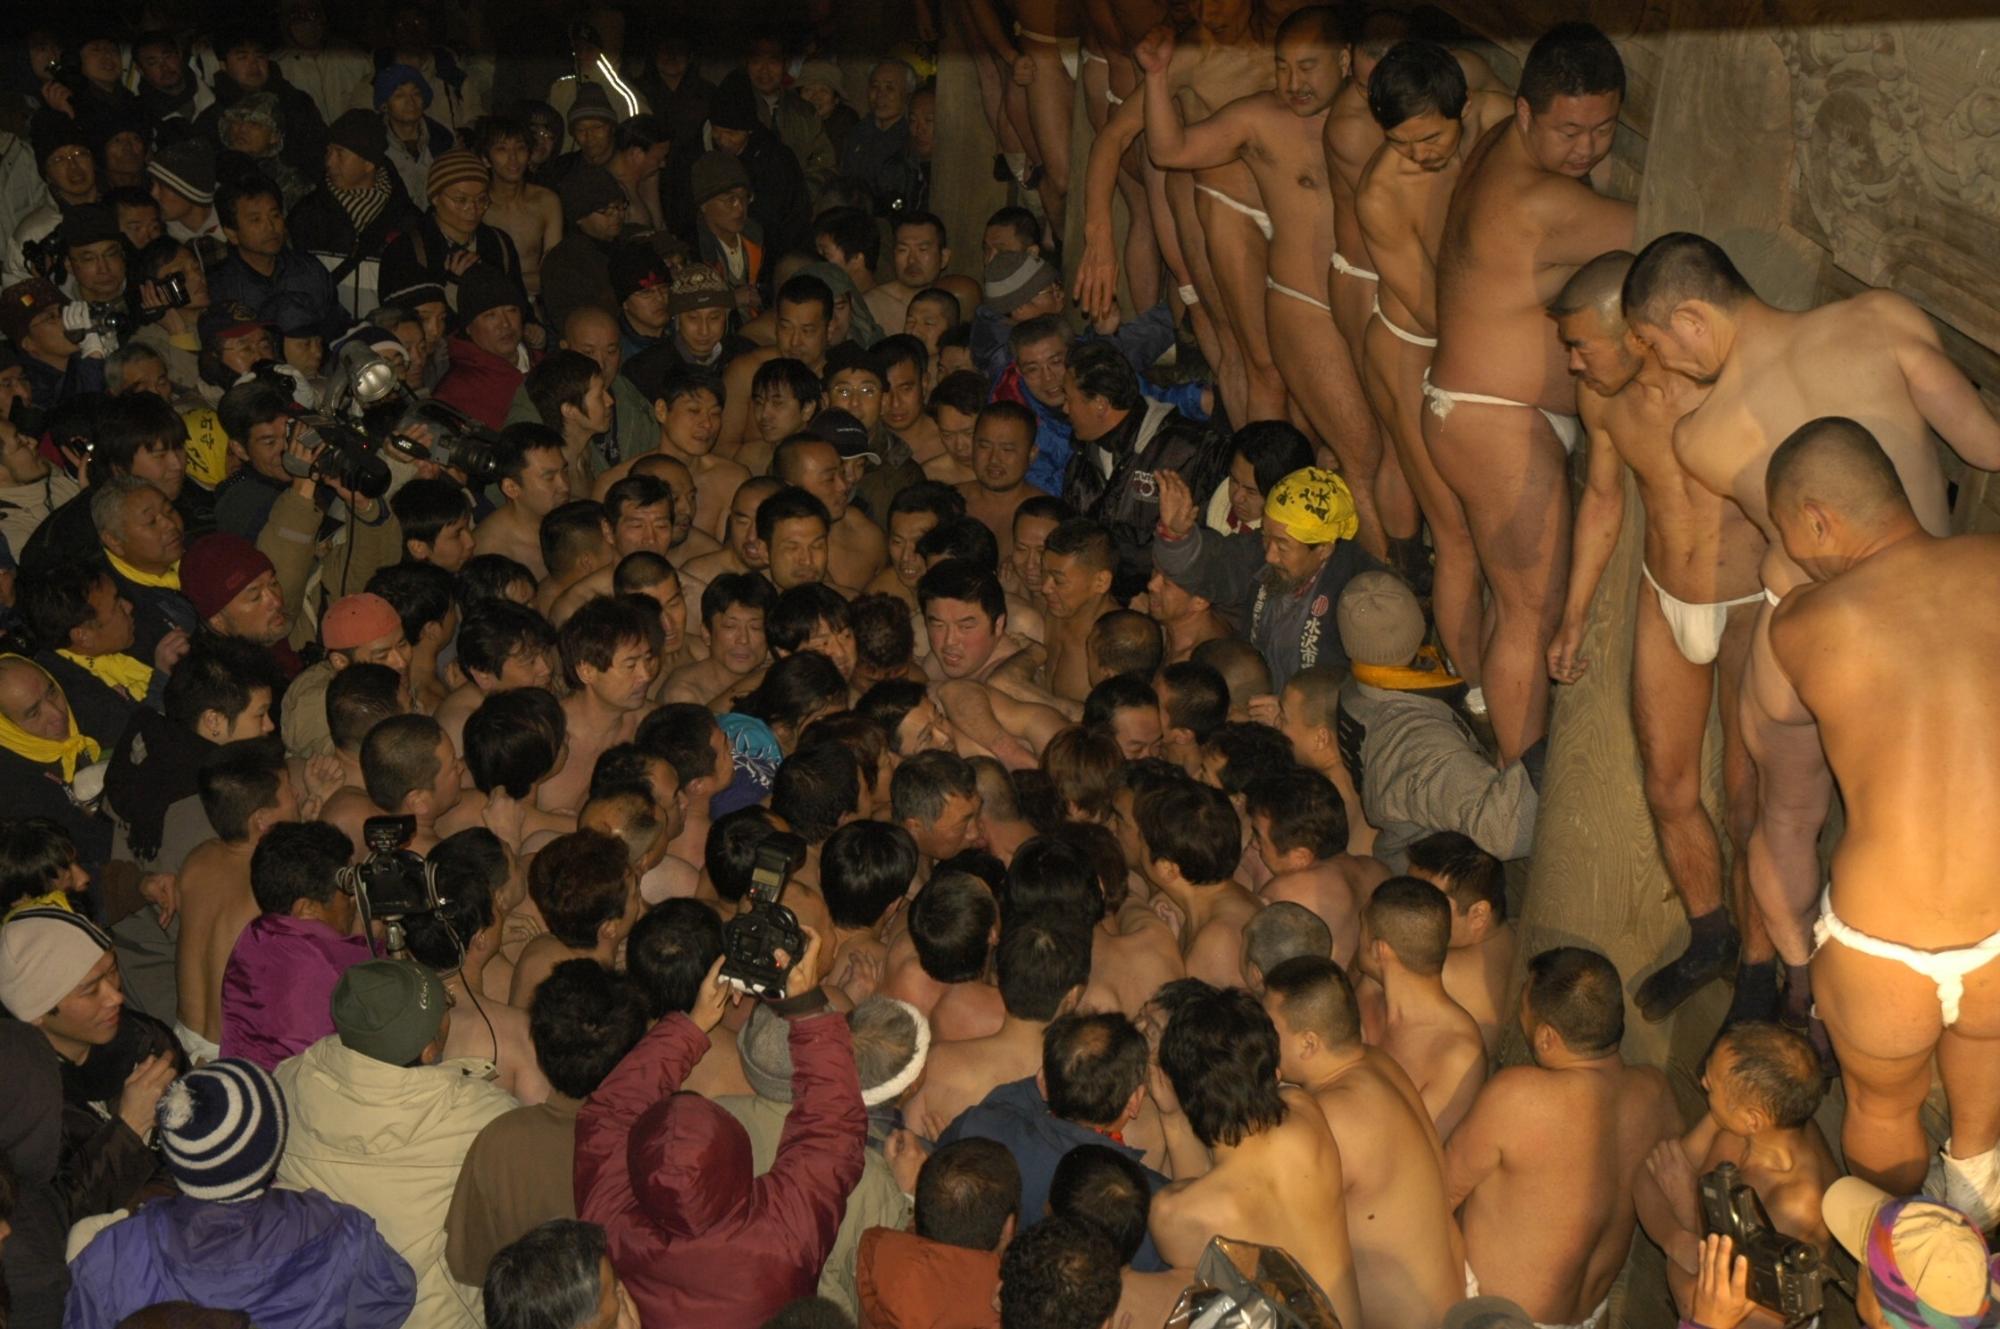 大勢の観客とふんどし姿の男性たちが会場にひしめき合っている様子の黒石寺蘇民祭の写真